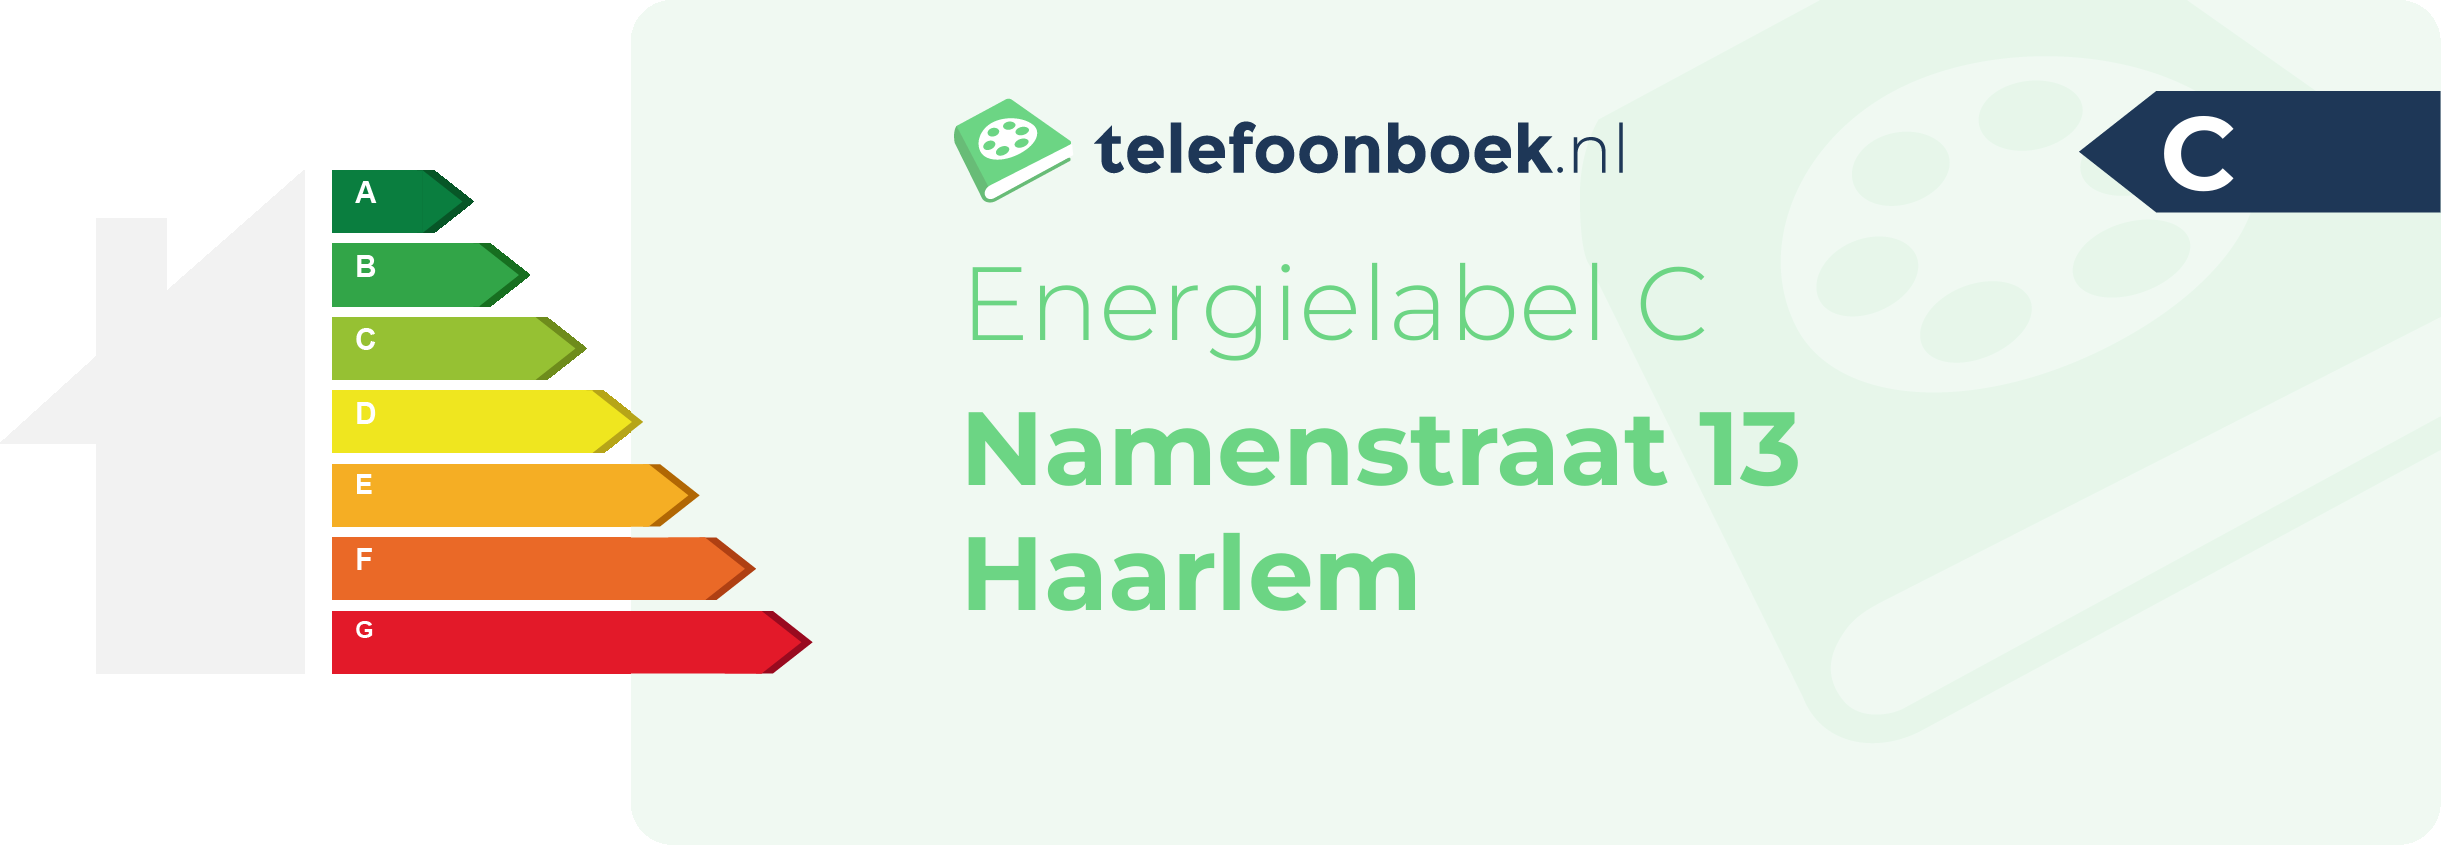 Energielabel Namenstraat 13 Haarlem